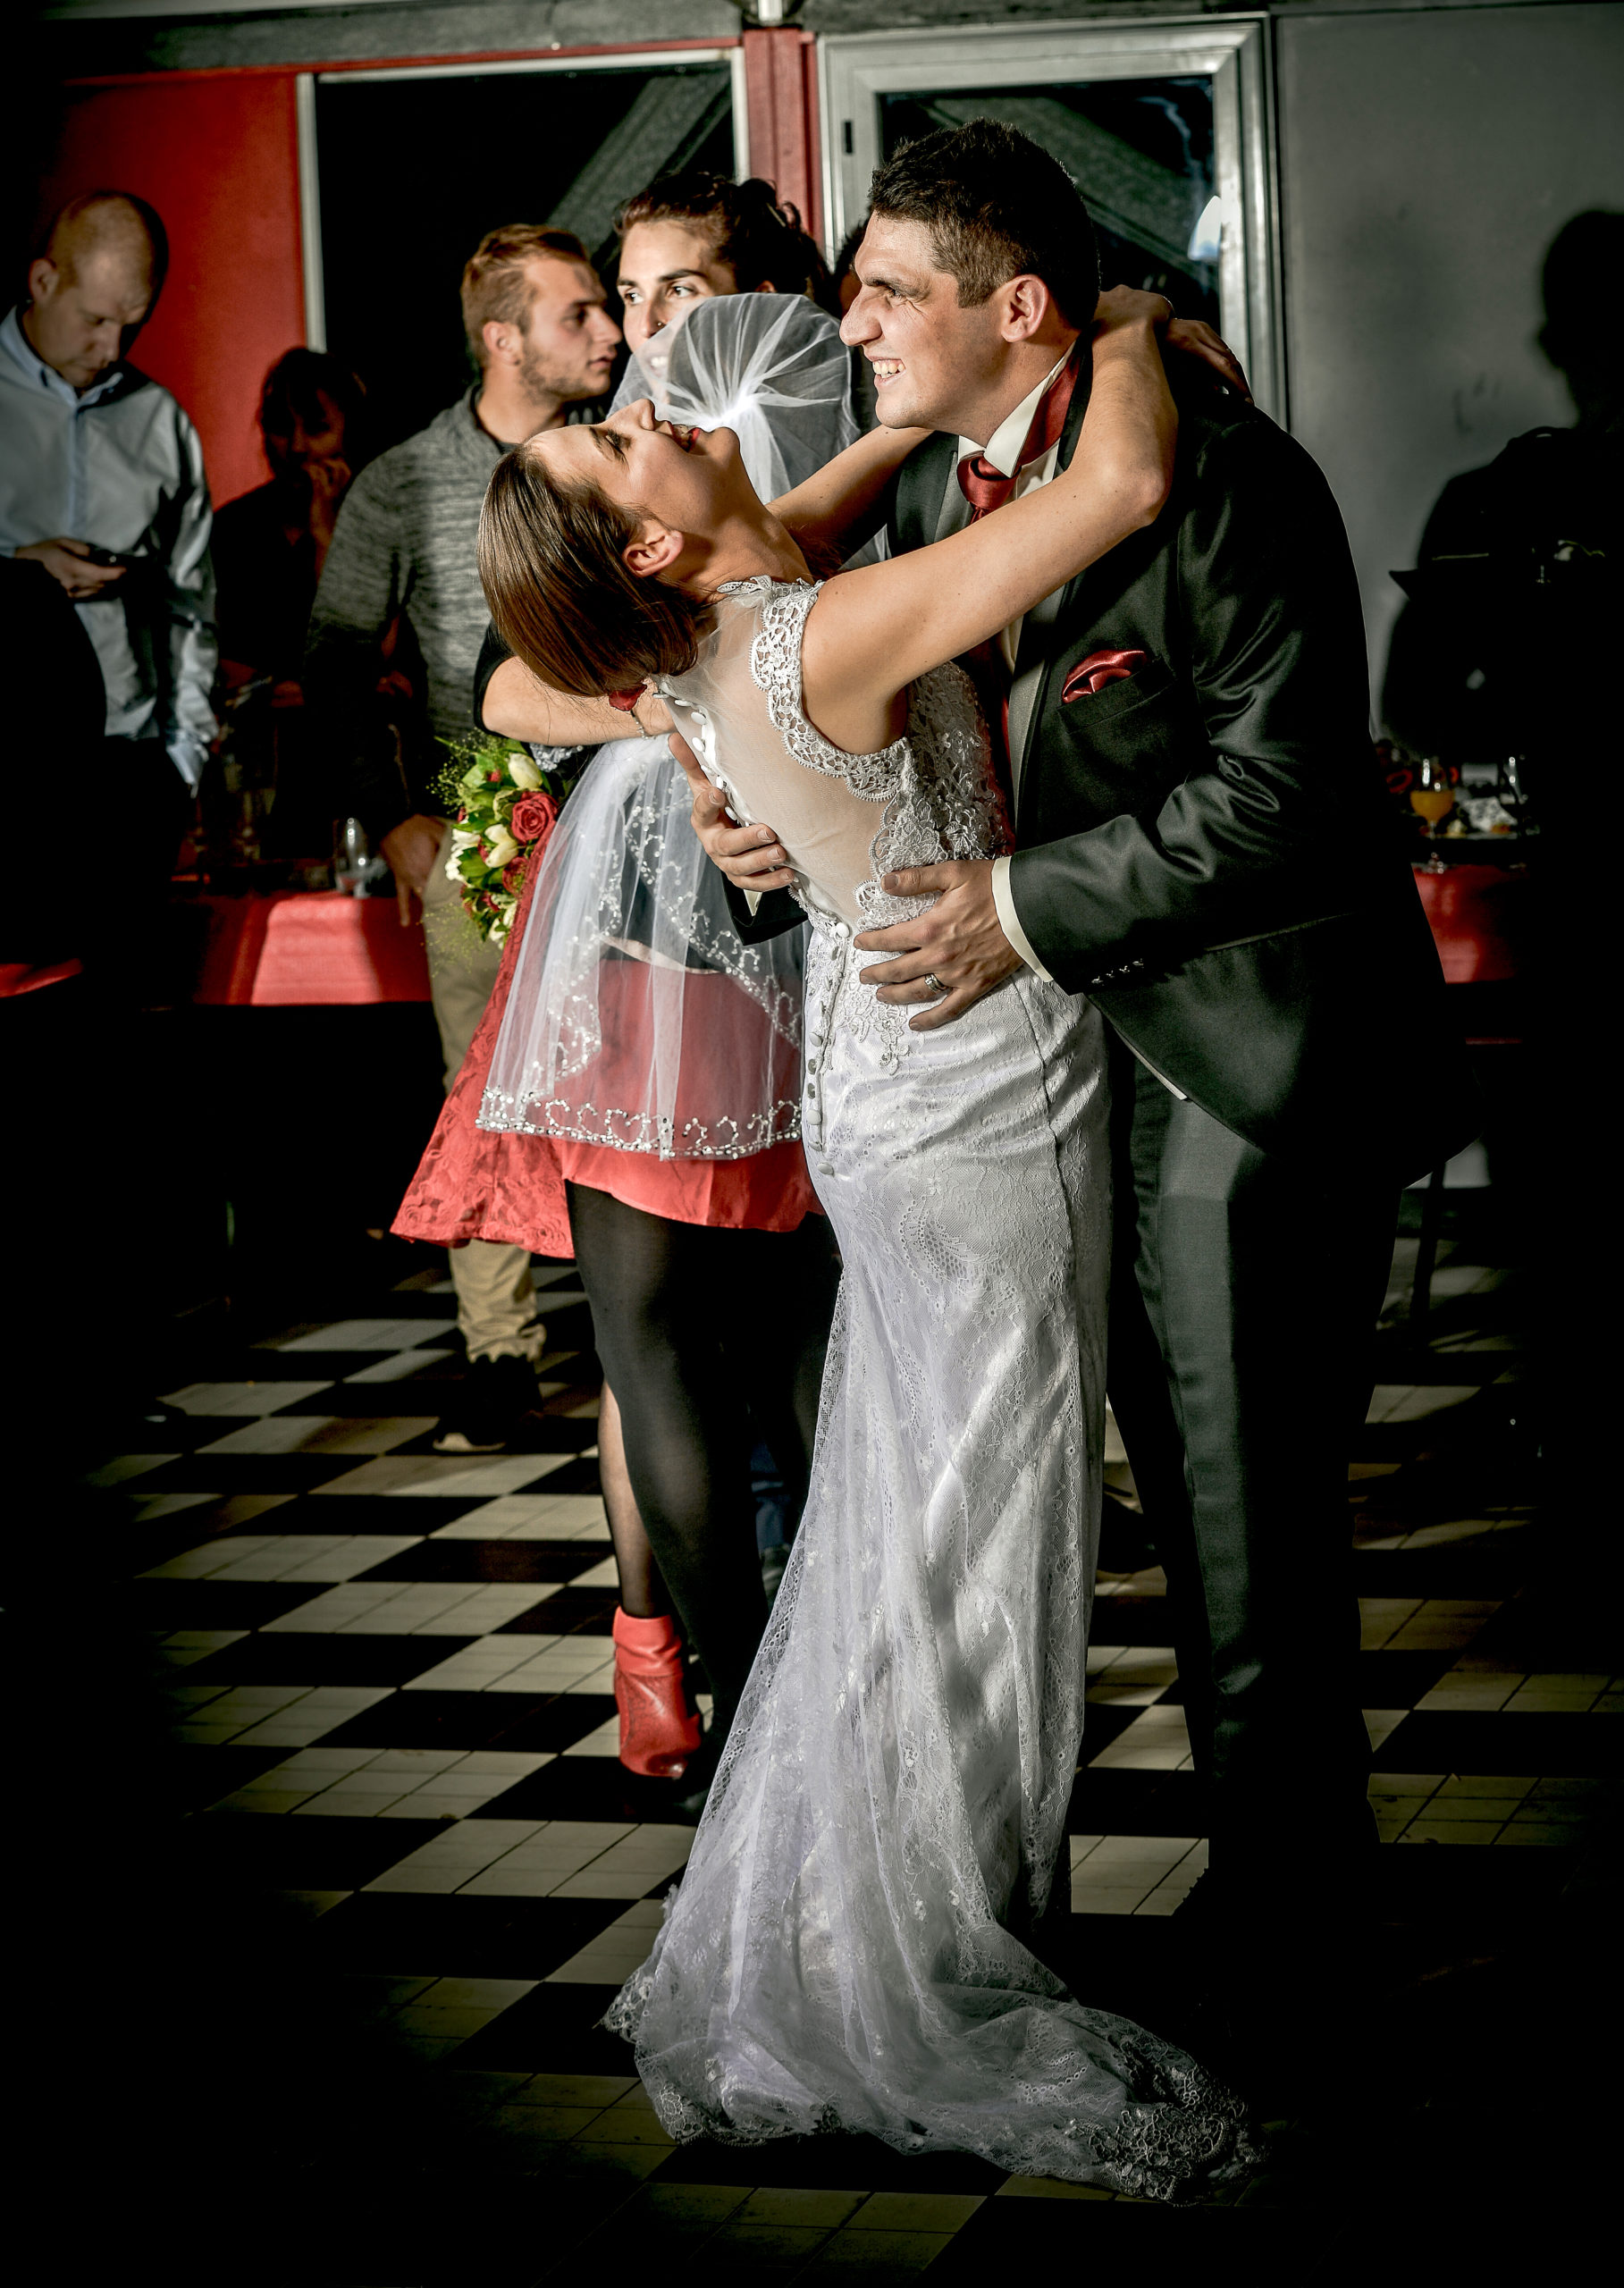 photos-de-mariage-Aveyron-photographe-de-mariage-soirée-animation-photos-studio-portraits-invités-groupes-avec-les-mariés-humoristique